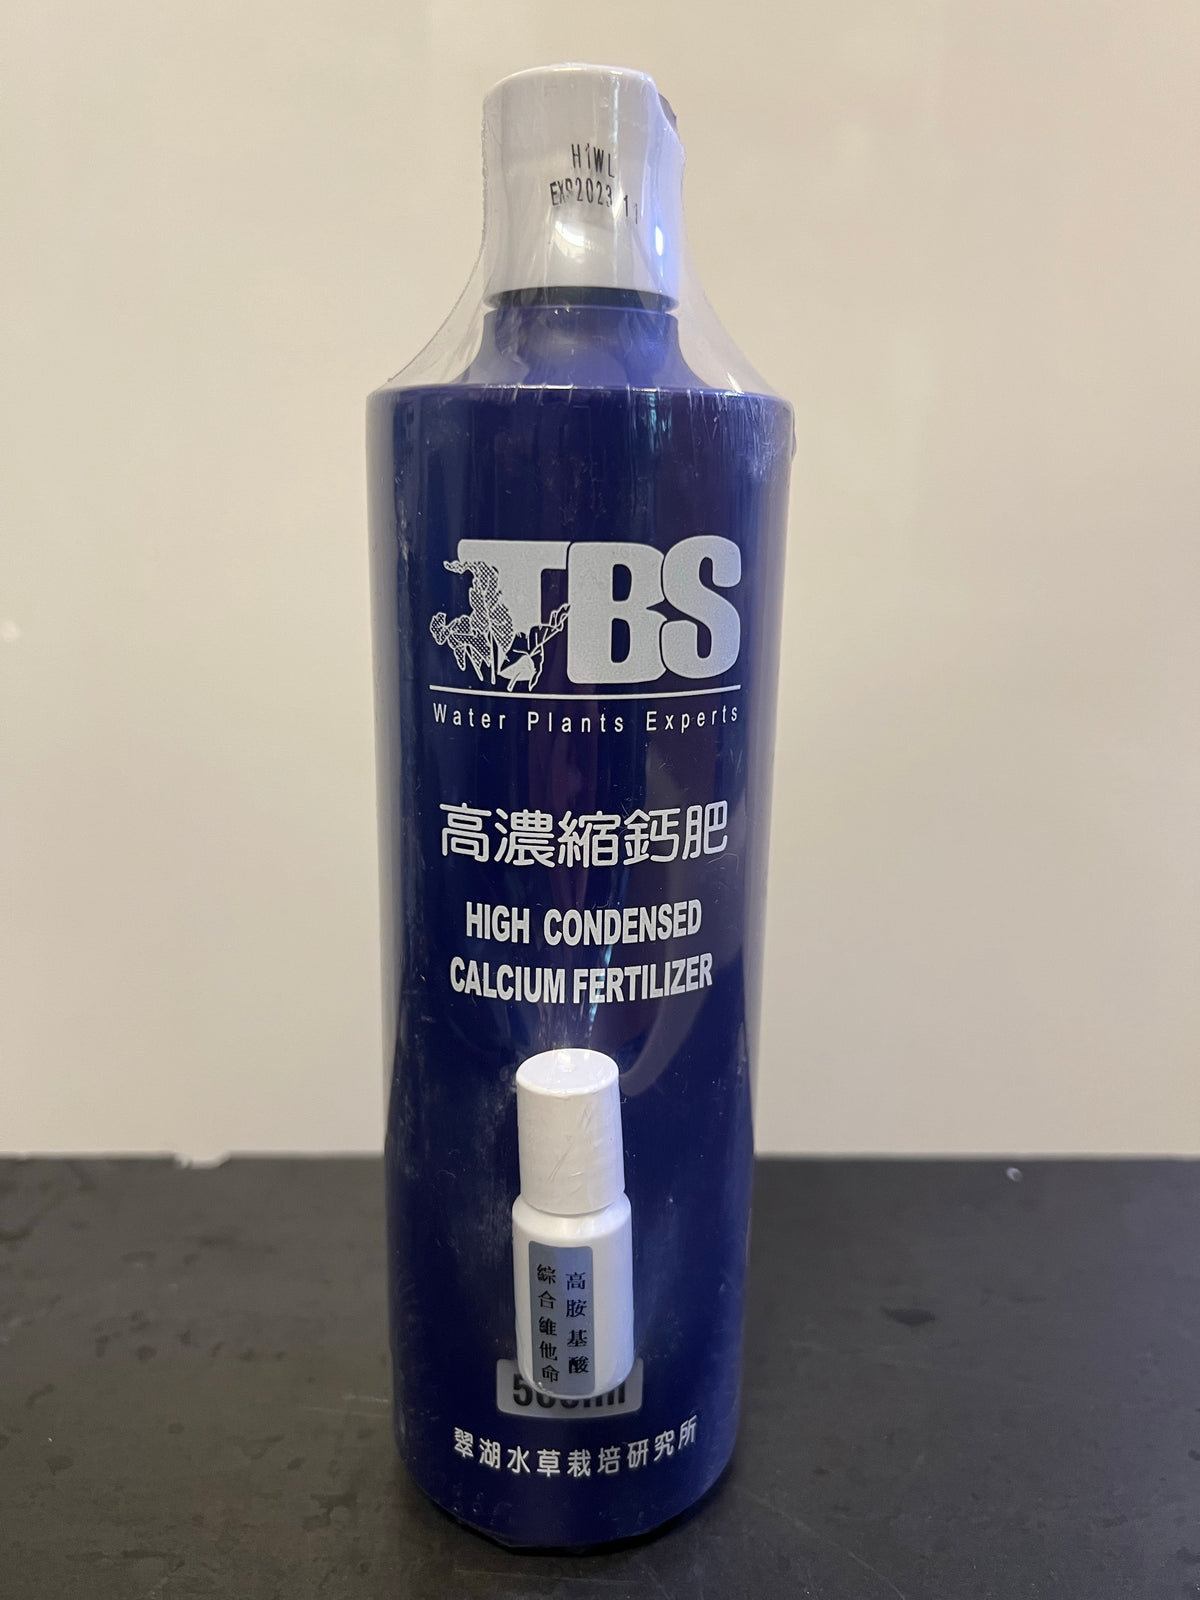 TBS 翠湖 高濃縮鈣肥 500ML #TBSAF020